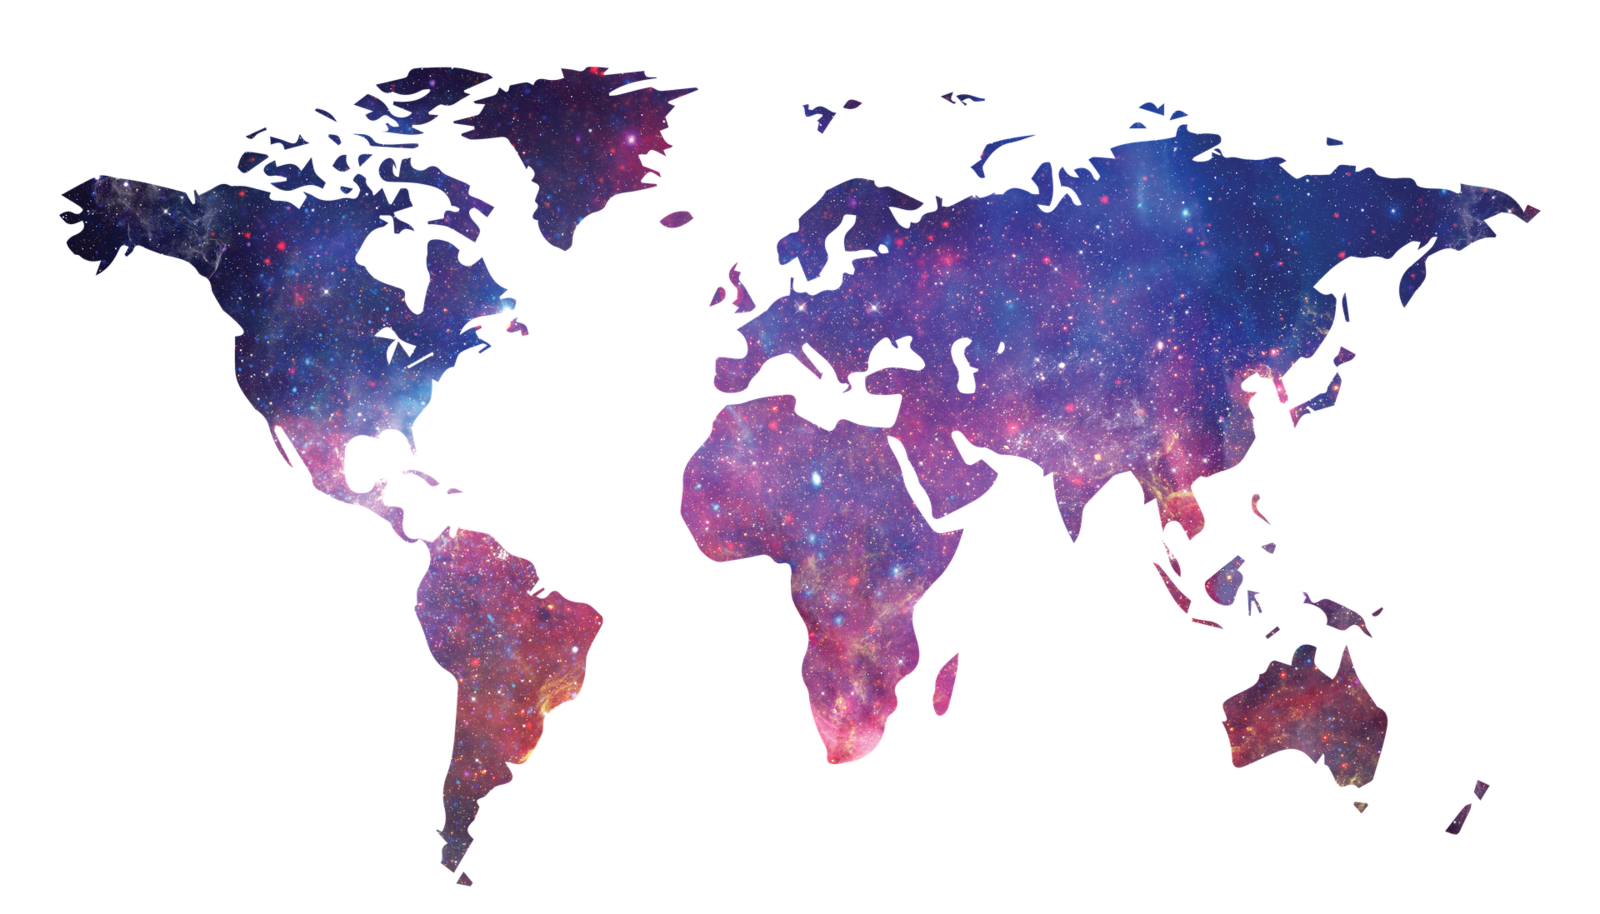 Die Weltkarte auf der die Kontinente aussehen wie Galaxien.